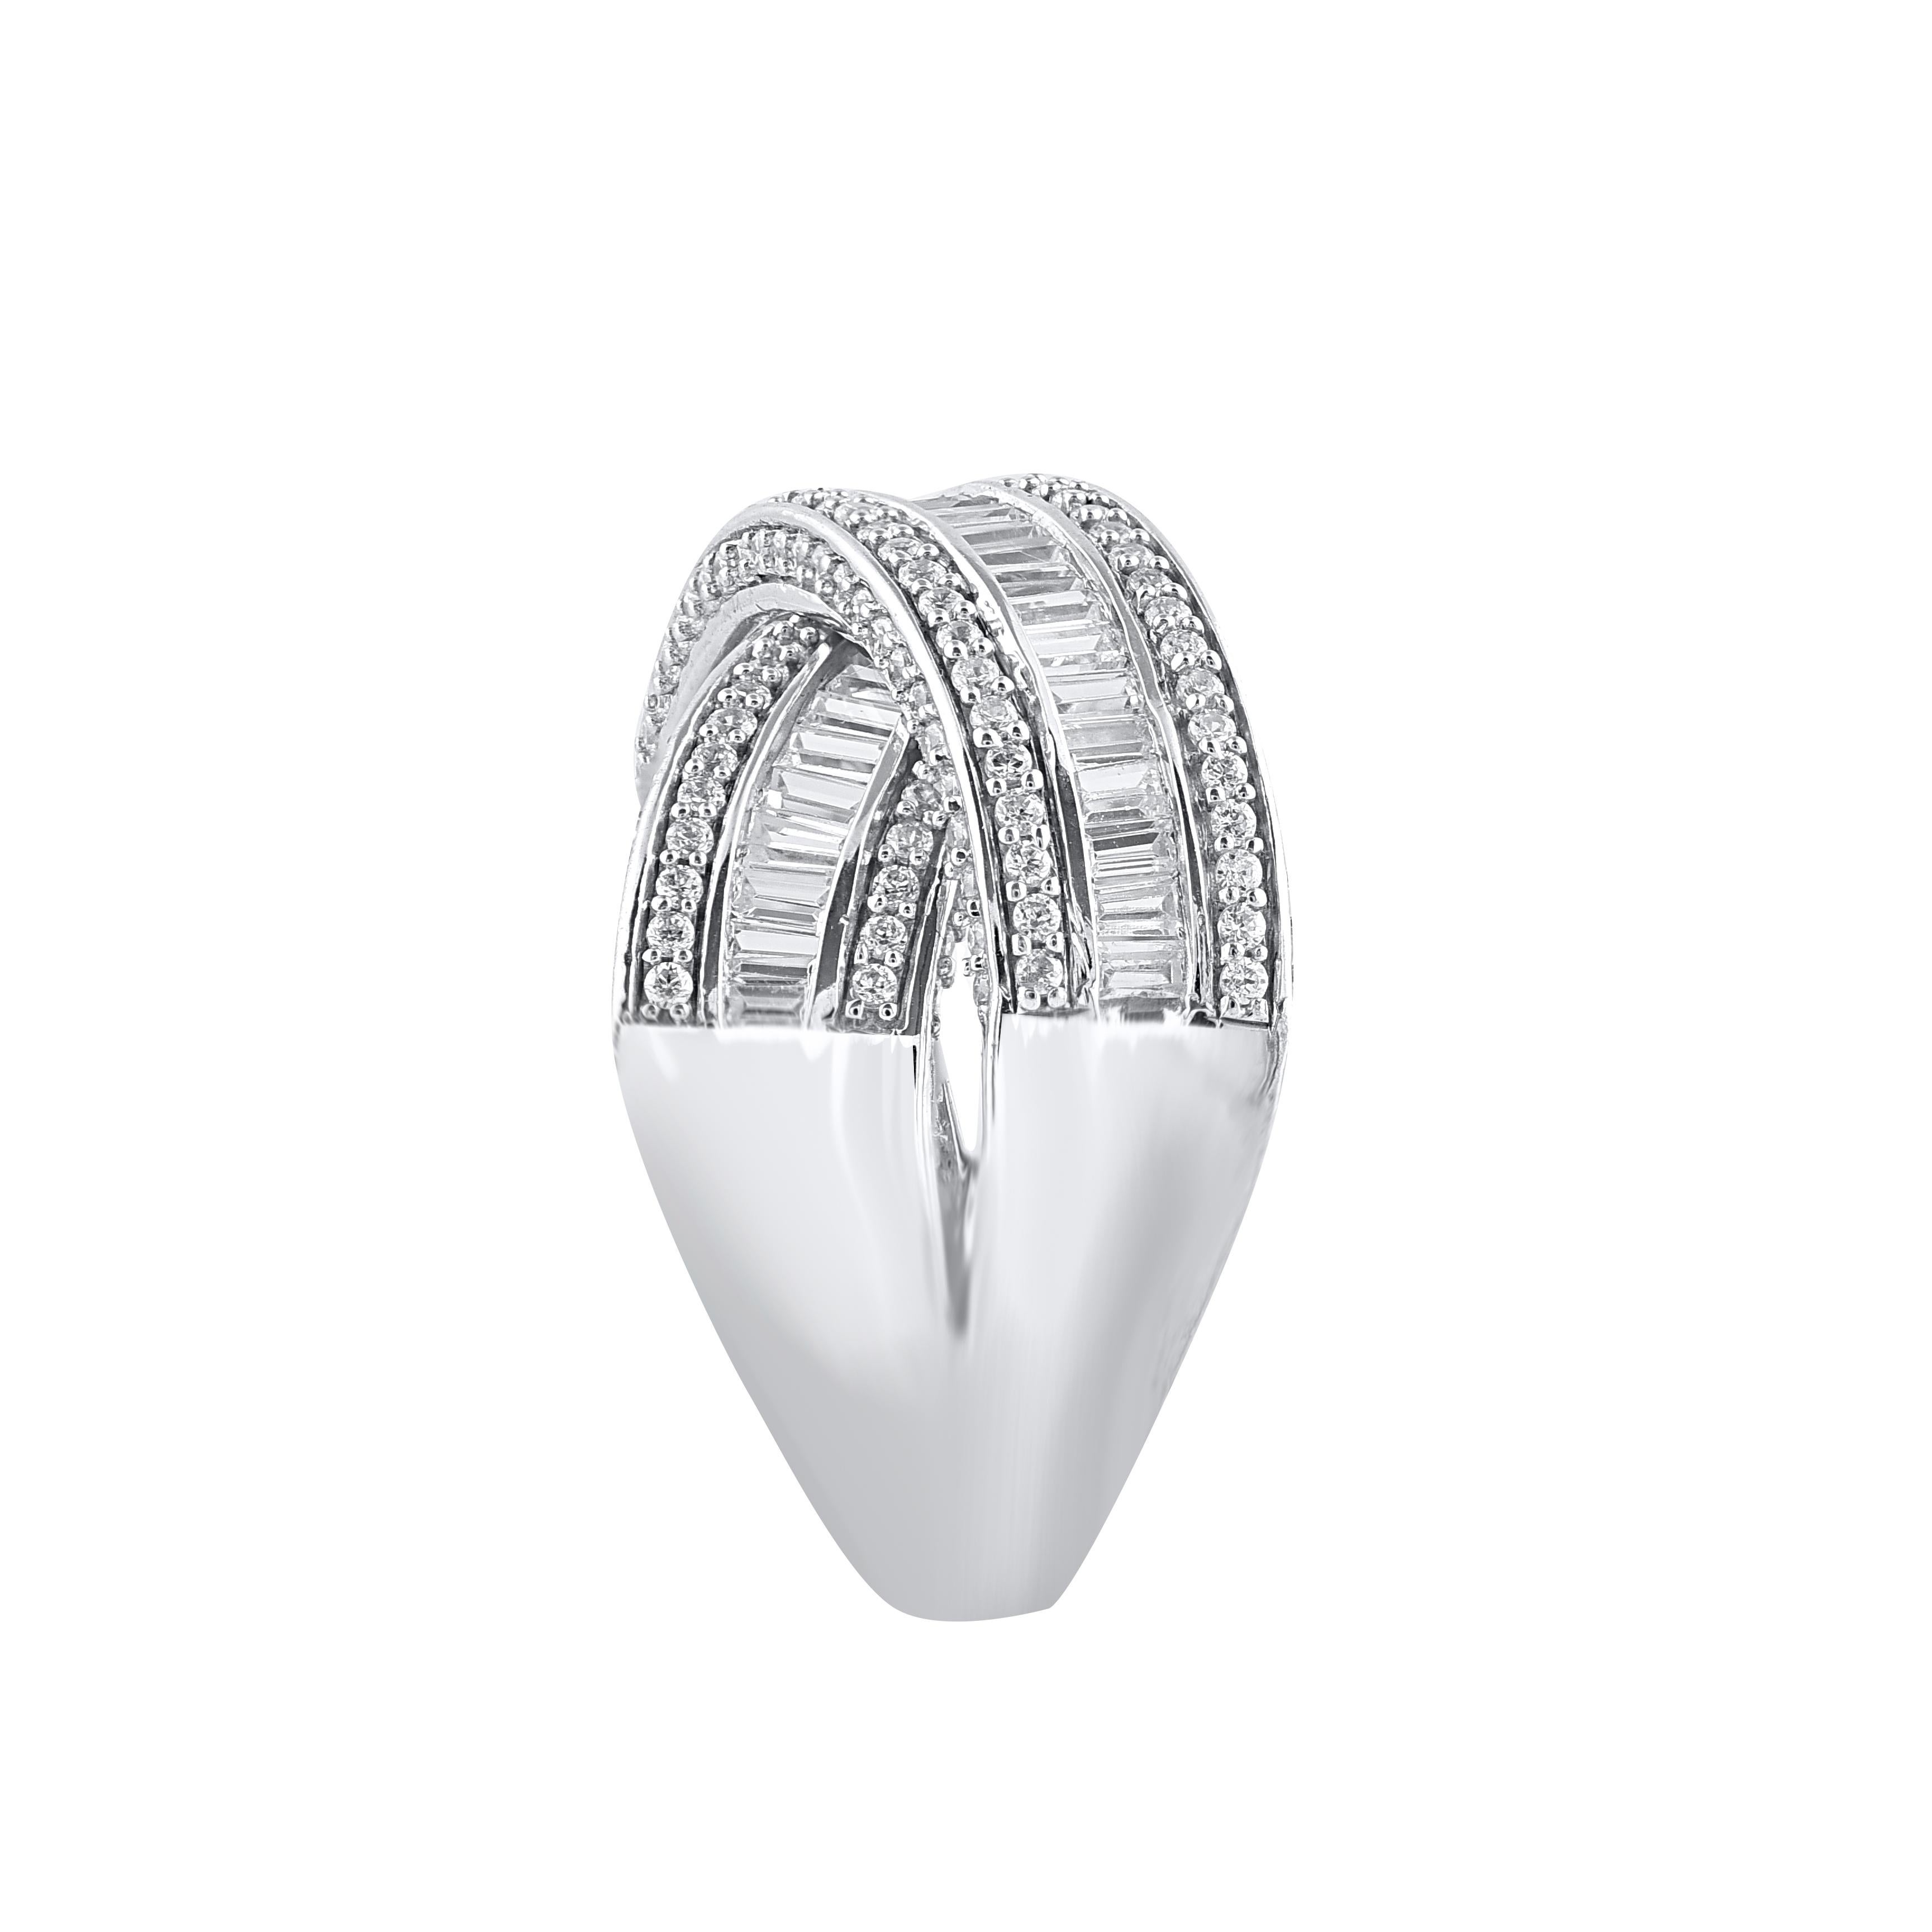 Schöner runder natürlicher Diamant und handgefertigt in 14 Karat Weißgold criss-cross Design Band Ring. Dieser Ring ist wunderschön gestaltet und mit 178 runden Diamanten im Brillant- und 107 Diamanten im Baguetteschliff in Pflaster-, Zacken- und